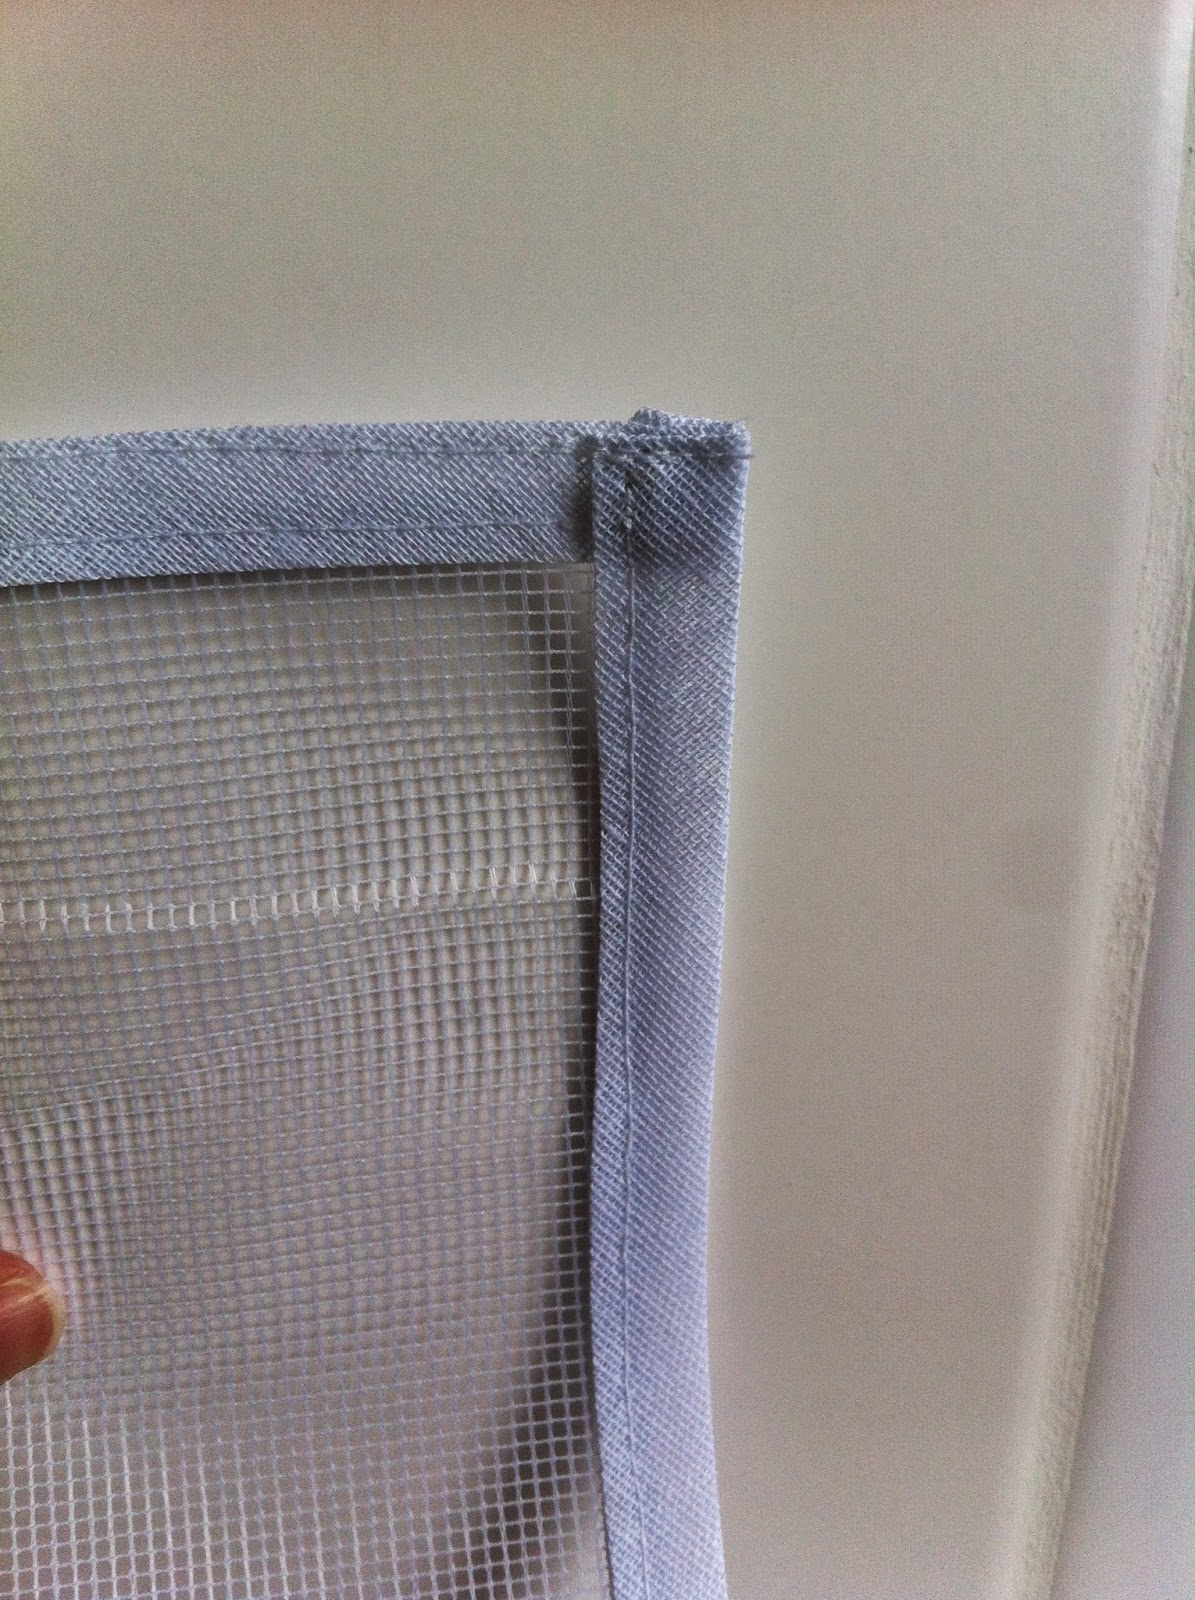 Imagens de tela mosquiteiro para janela com velcro